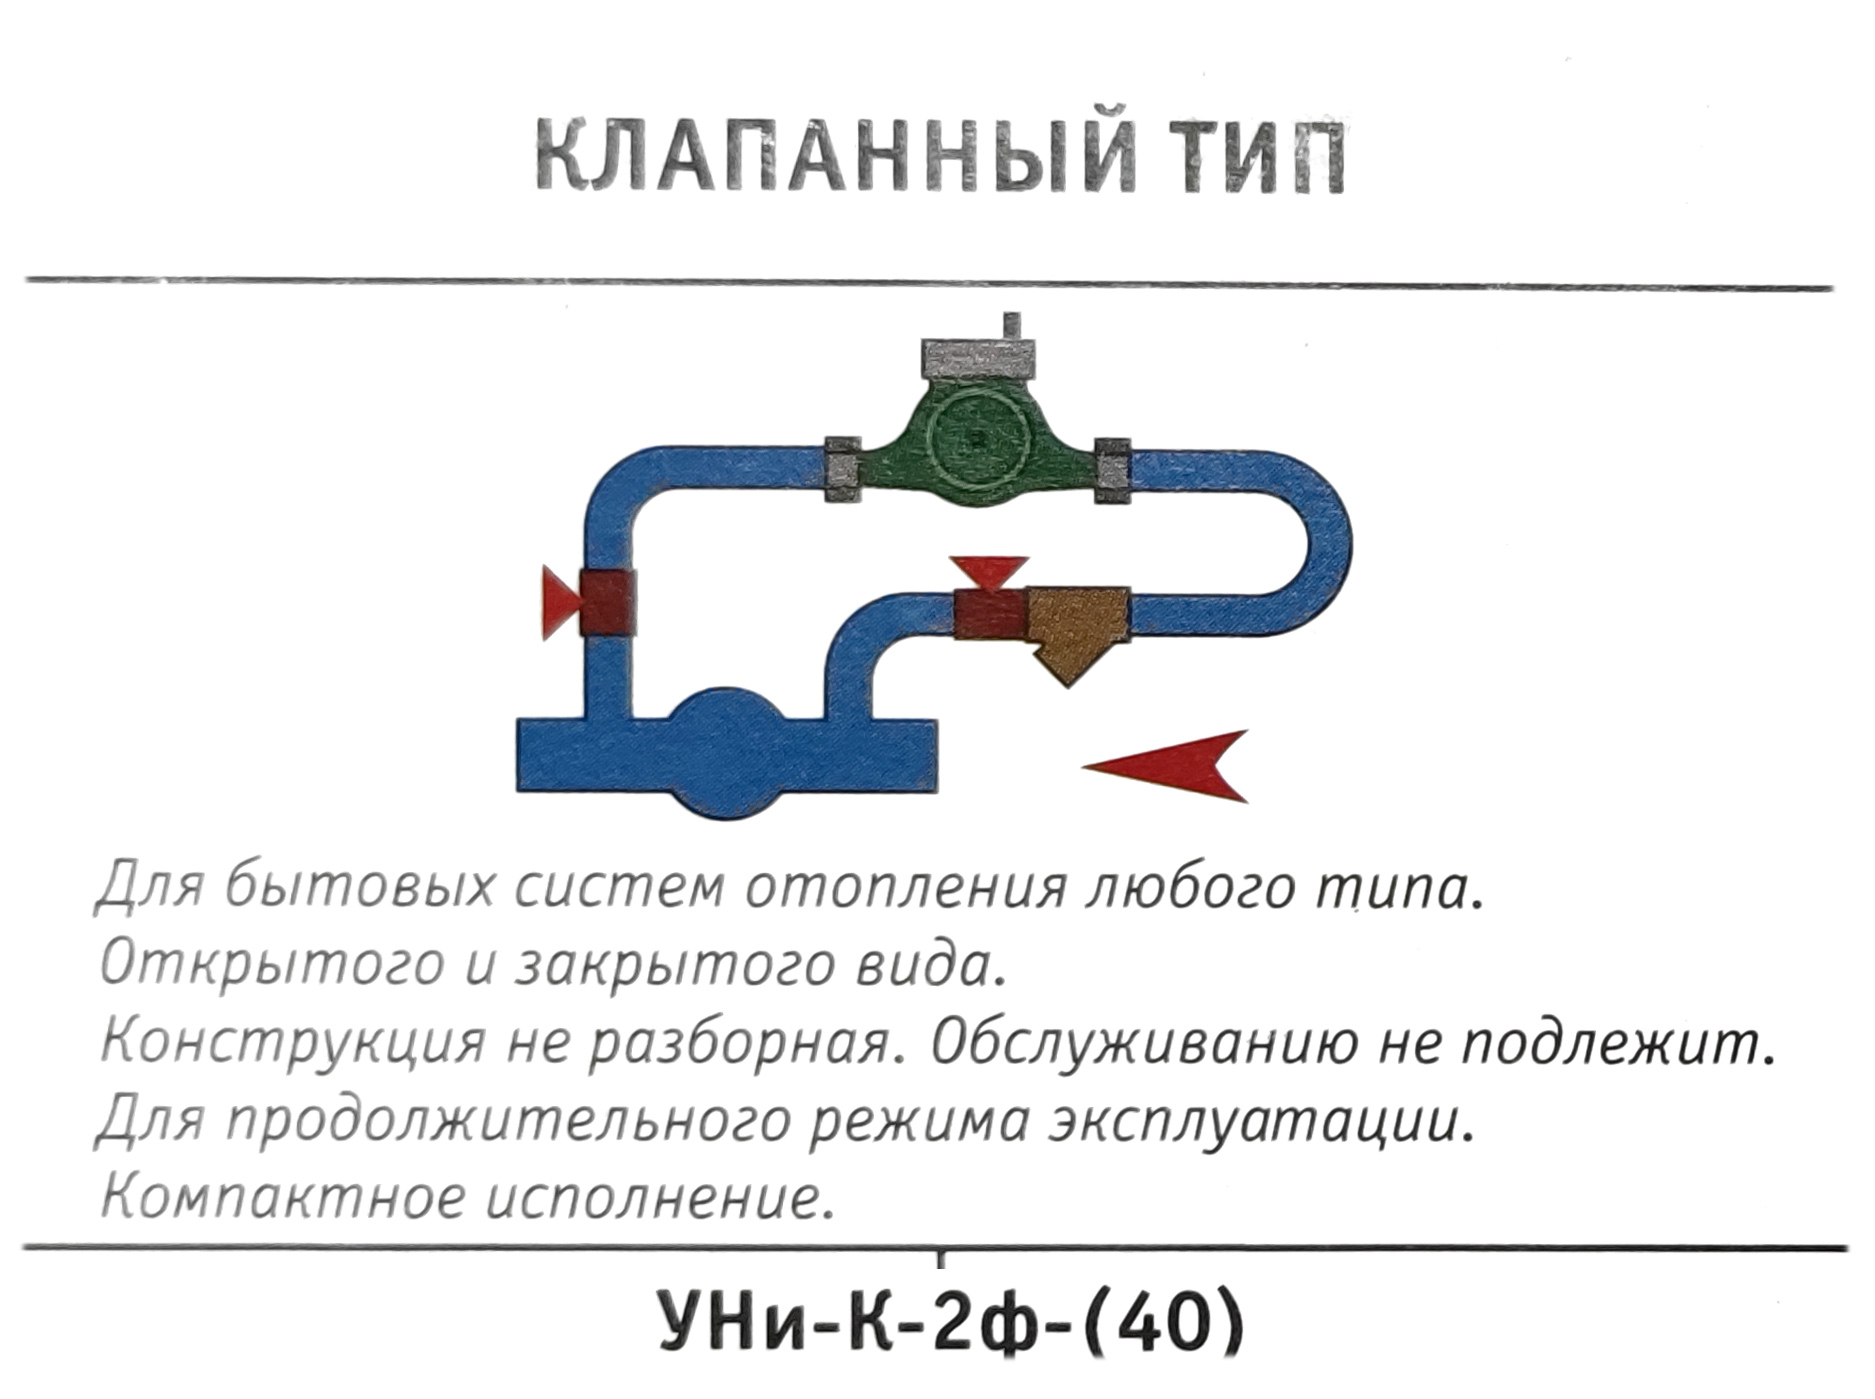 Узел насосный клапанный "УНи-К-2ф-(40)" для систем всех типов